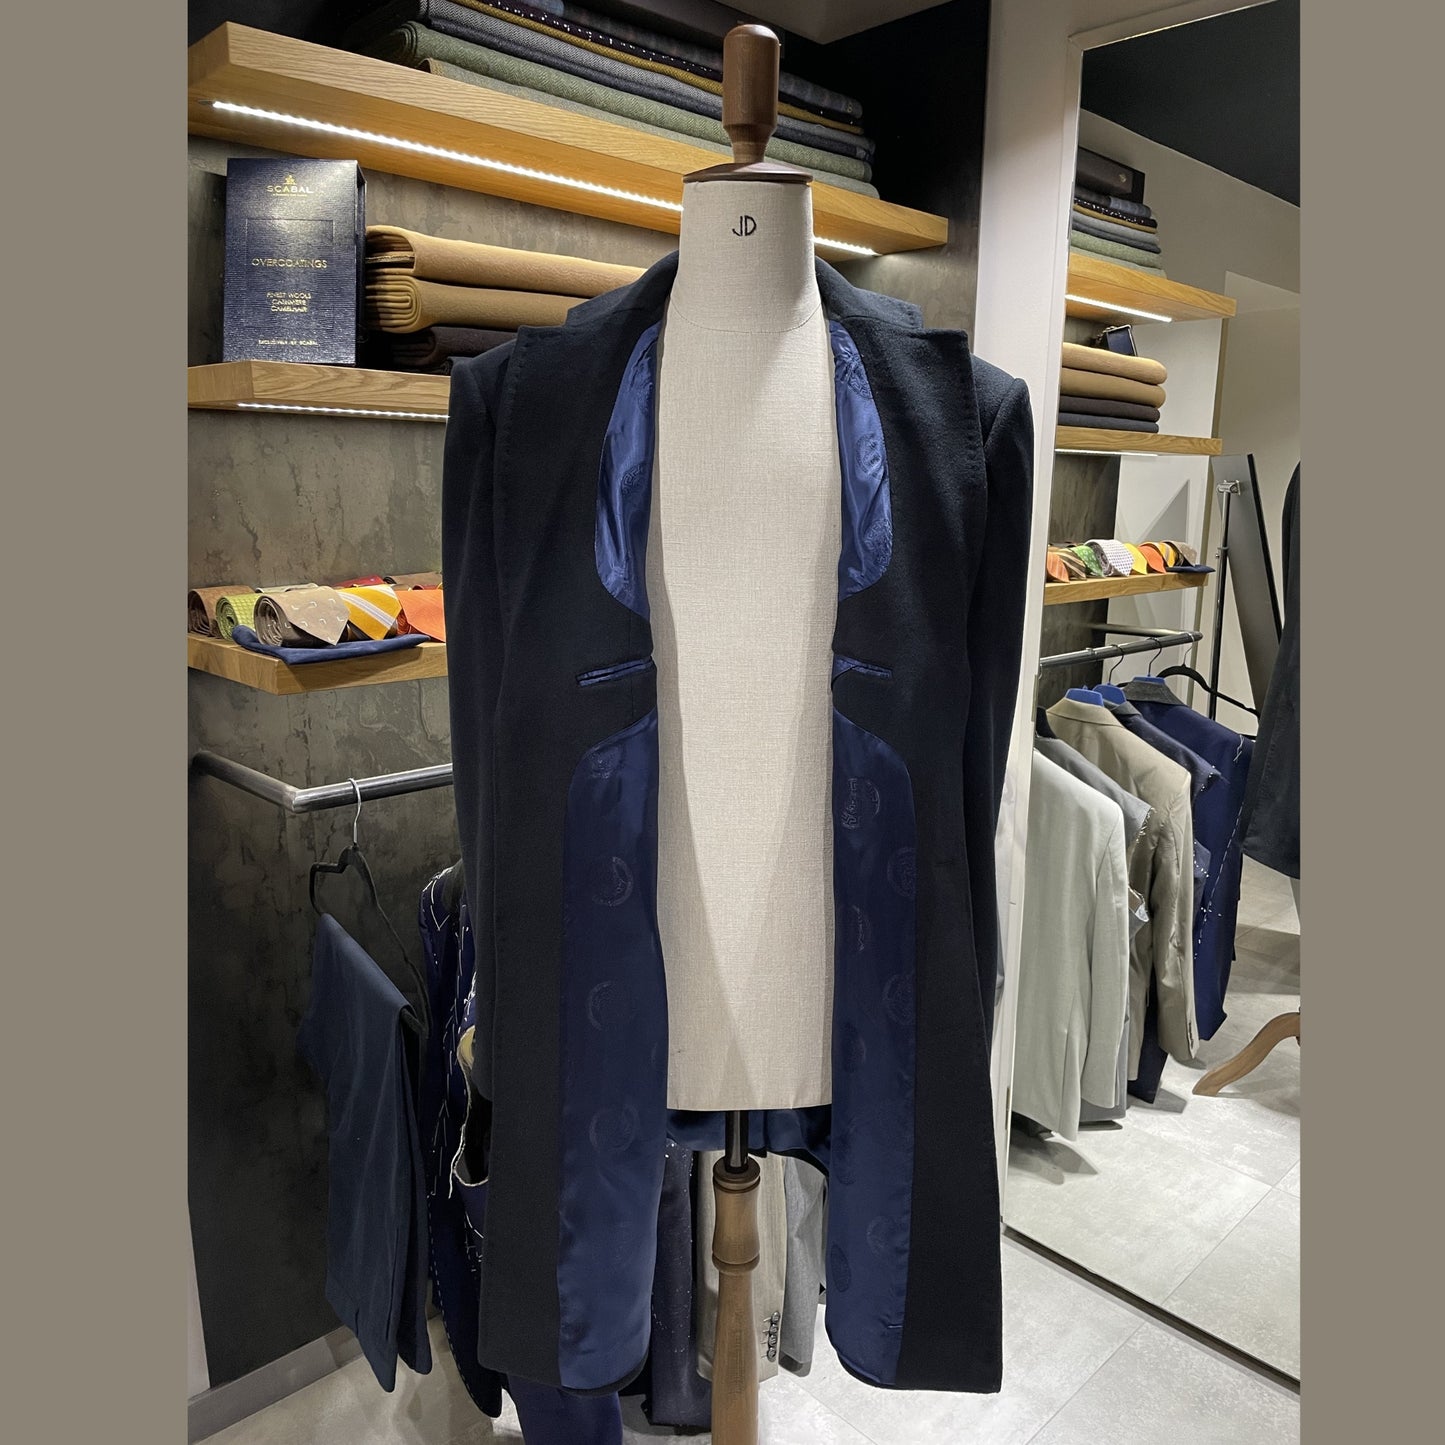 Pánský kabát na míru dle vlastního návrhu (poukaz) JDobias-tailoring